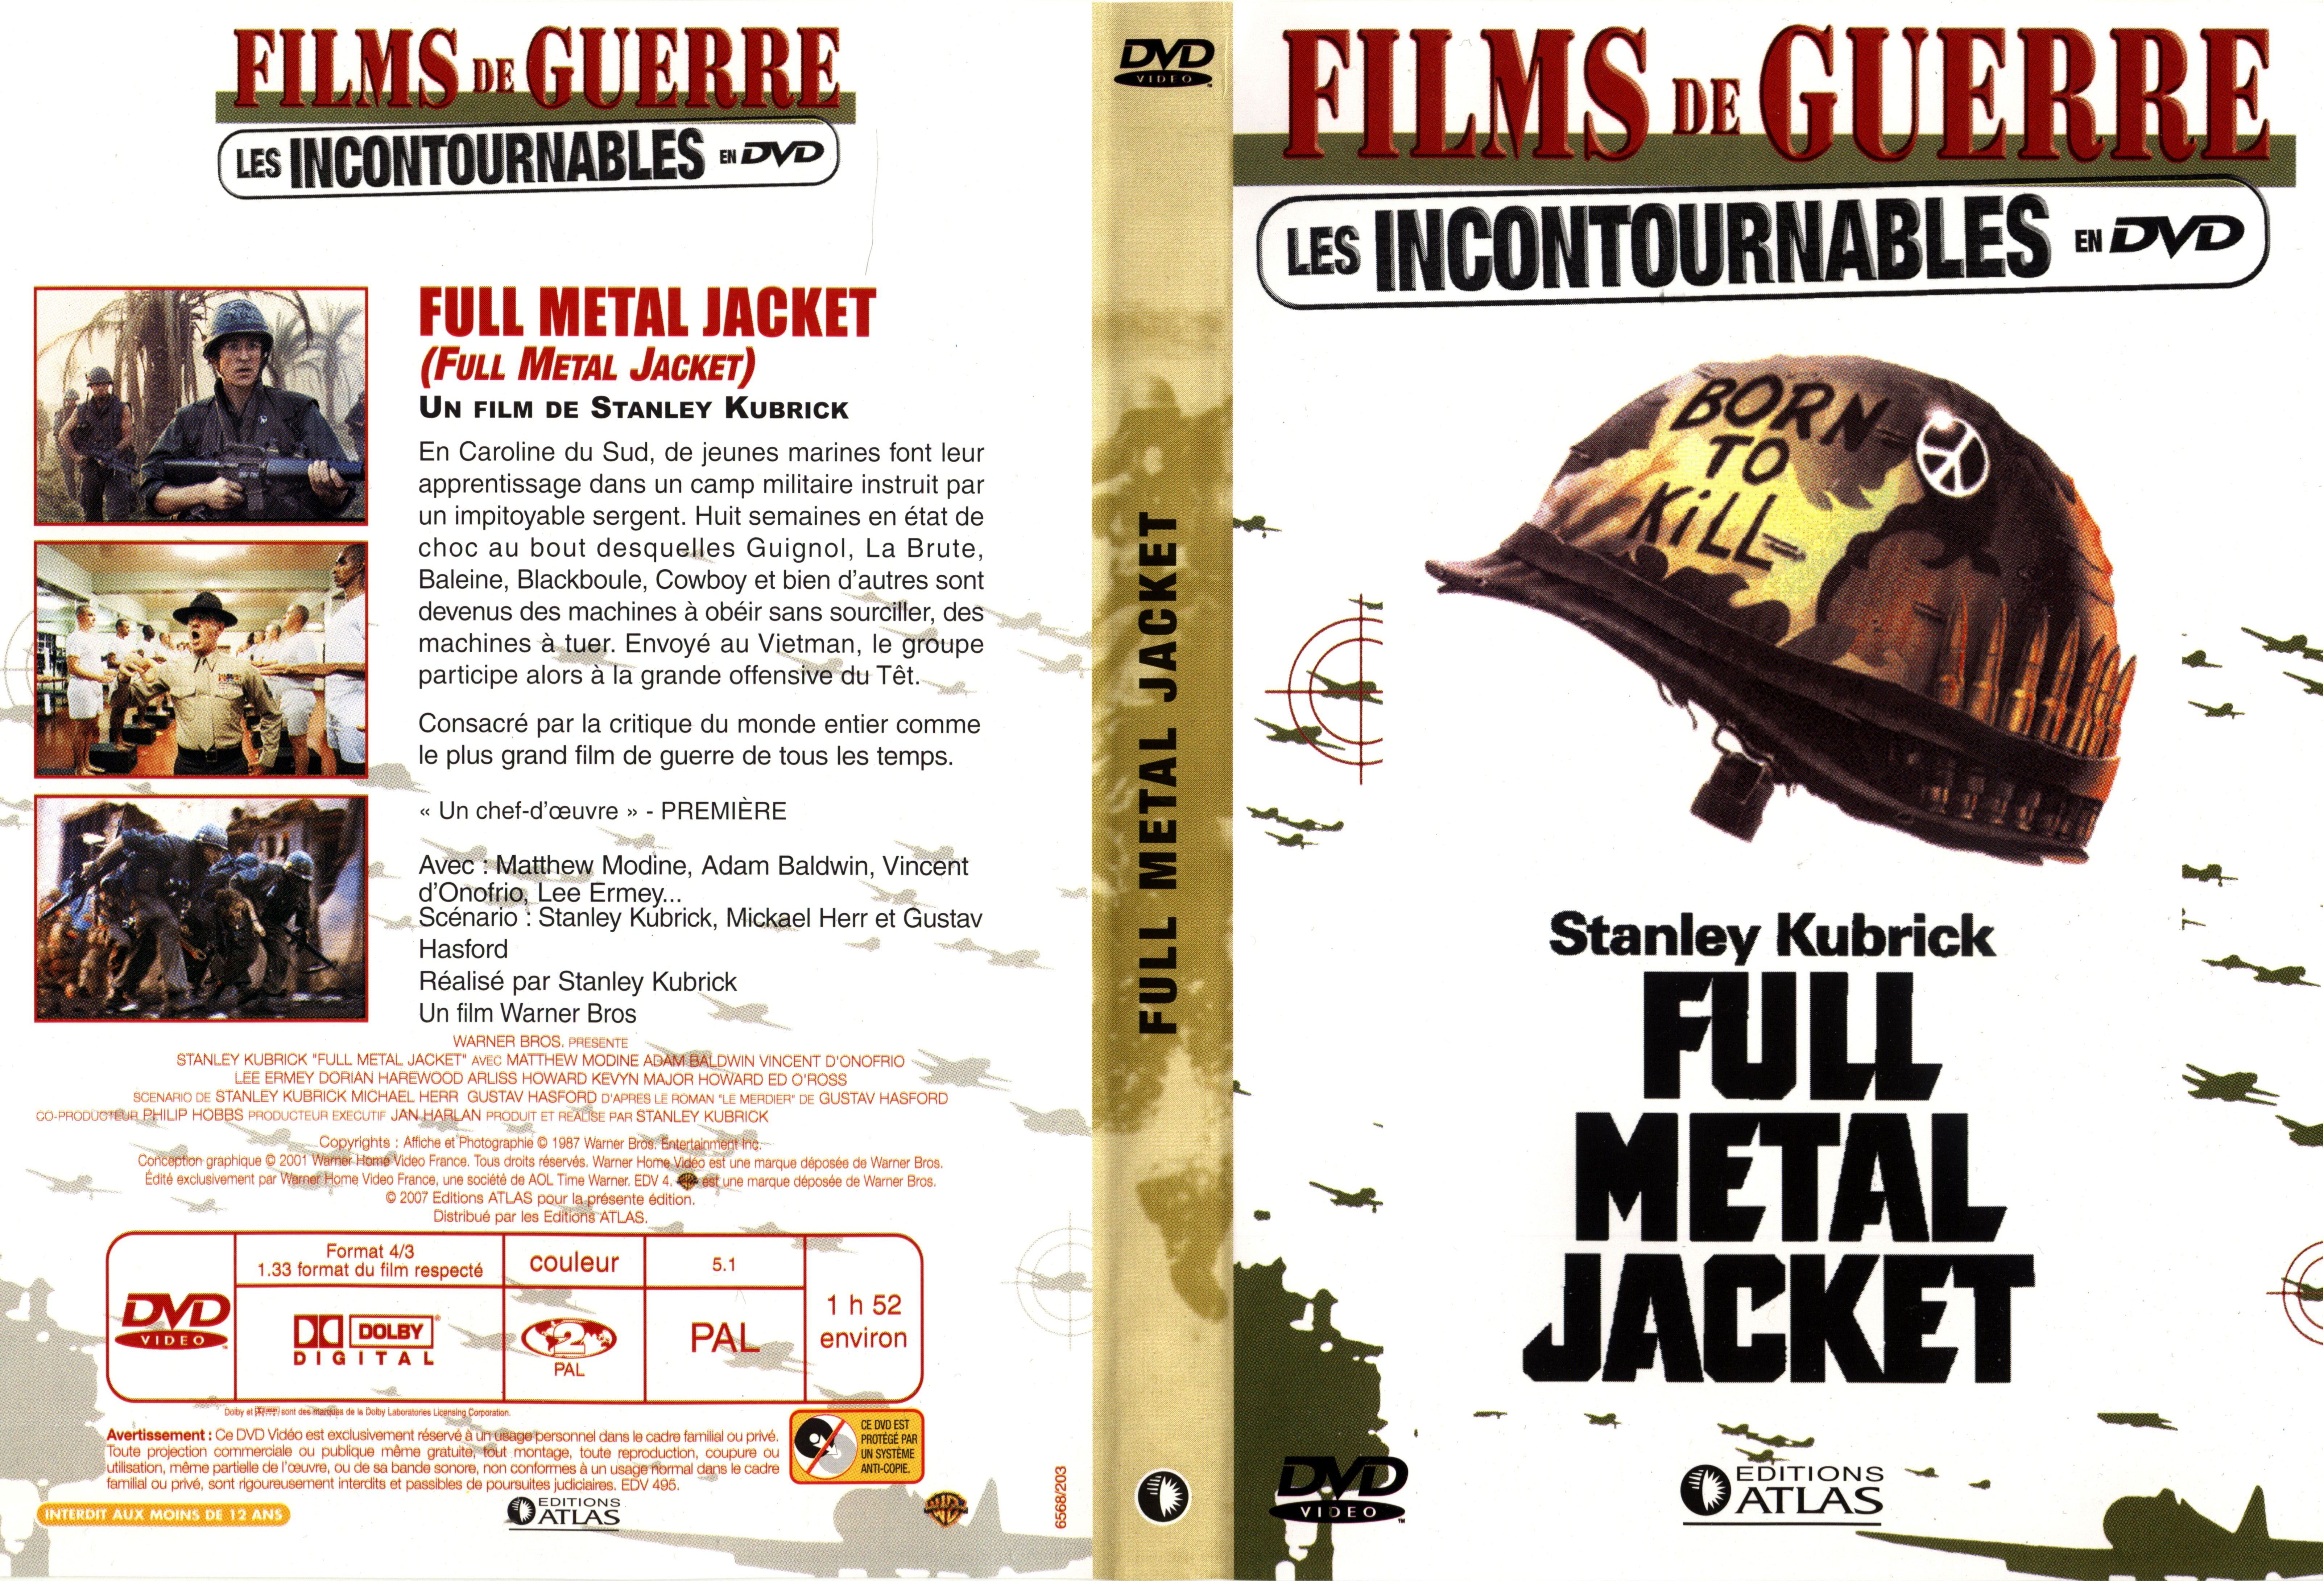 Jaquette DVD Full metal jacket v3